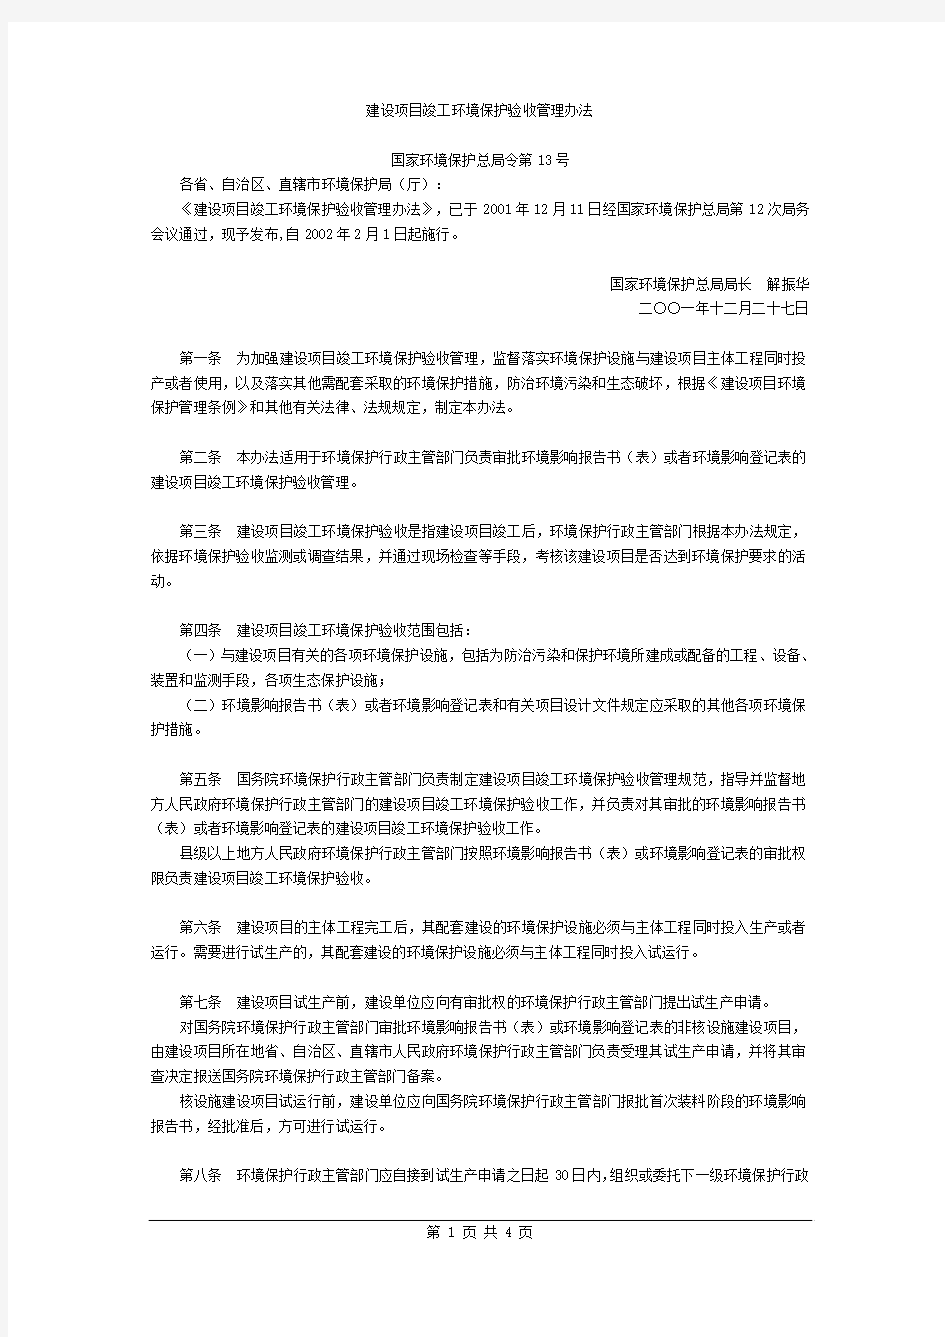 建设项目竣工环境保护验收管理办法(中文、2002年2月1日)